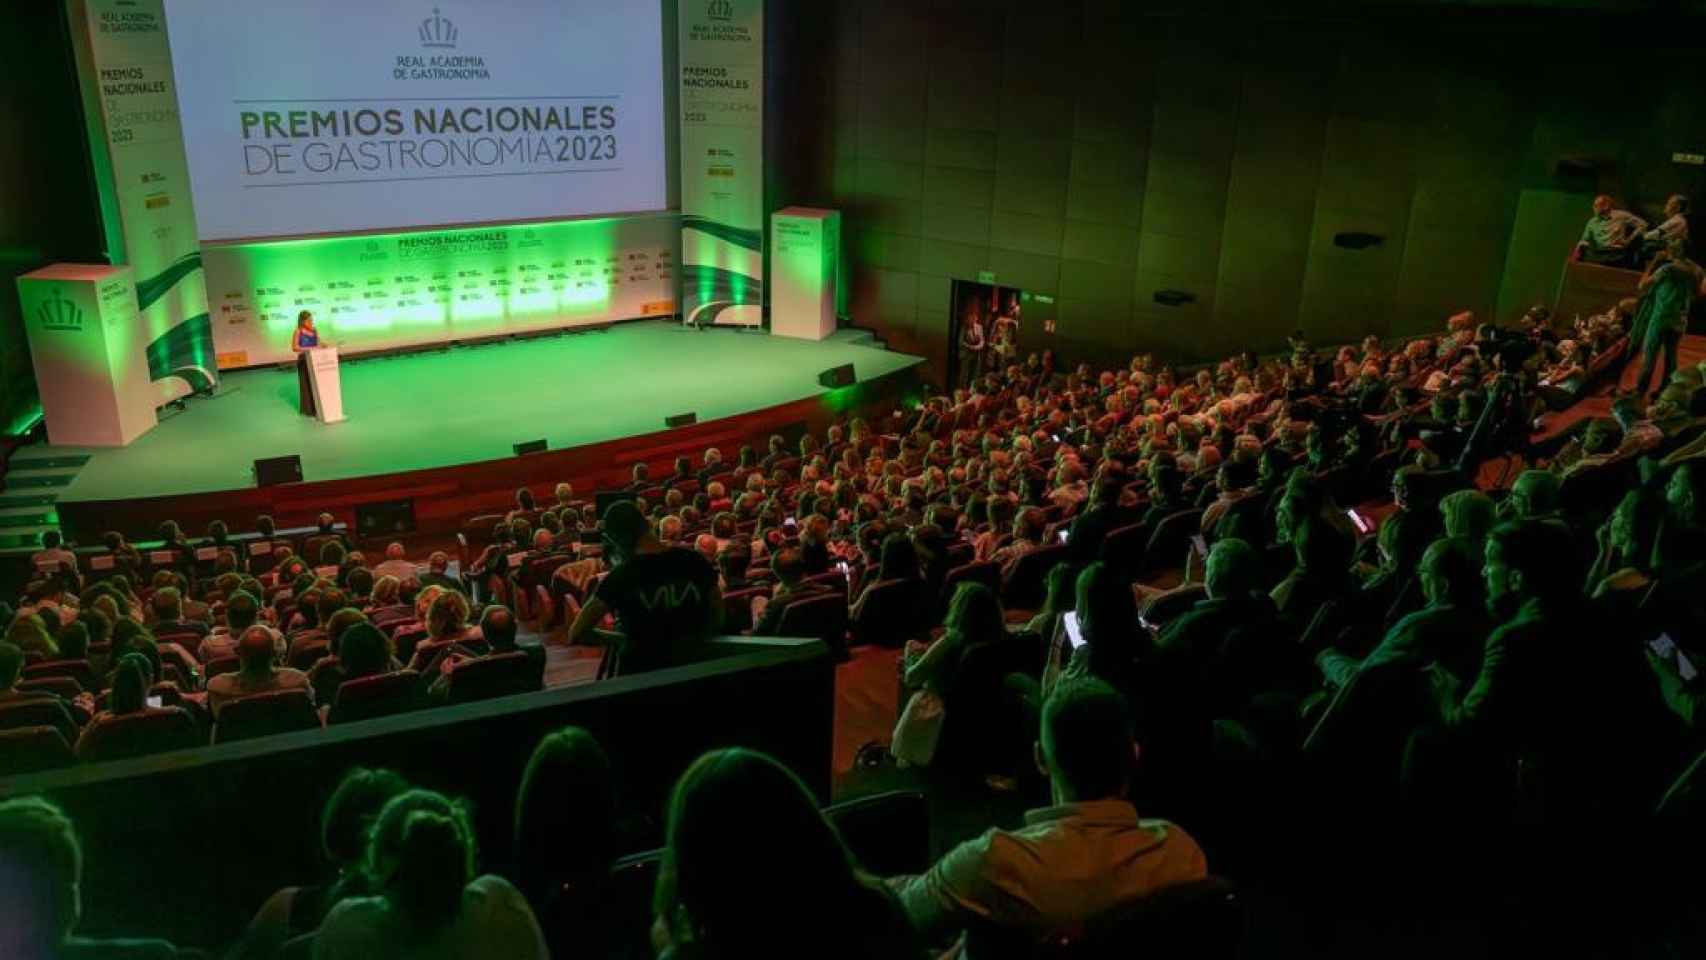 La gala de los Premios Nacionales de Gastronomía 2023.